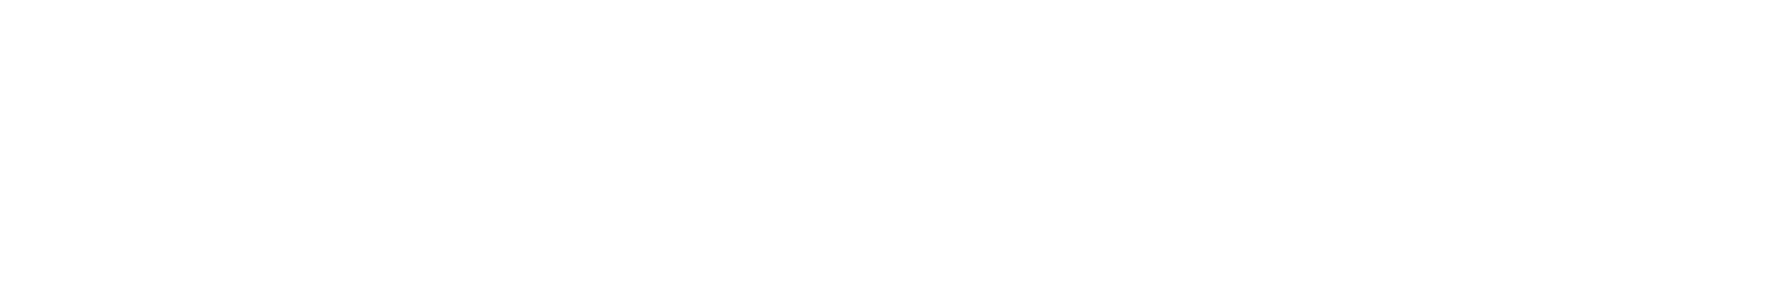 'Tis the Season to be Merry logo